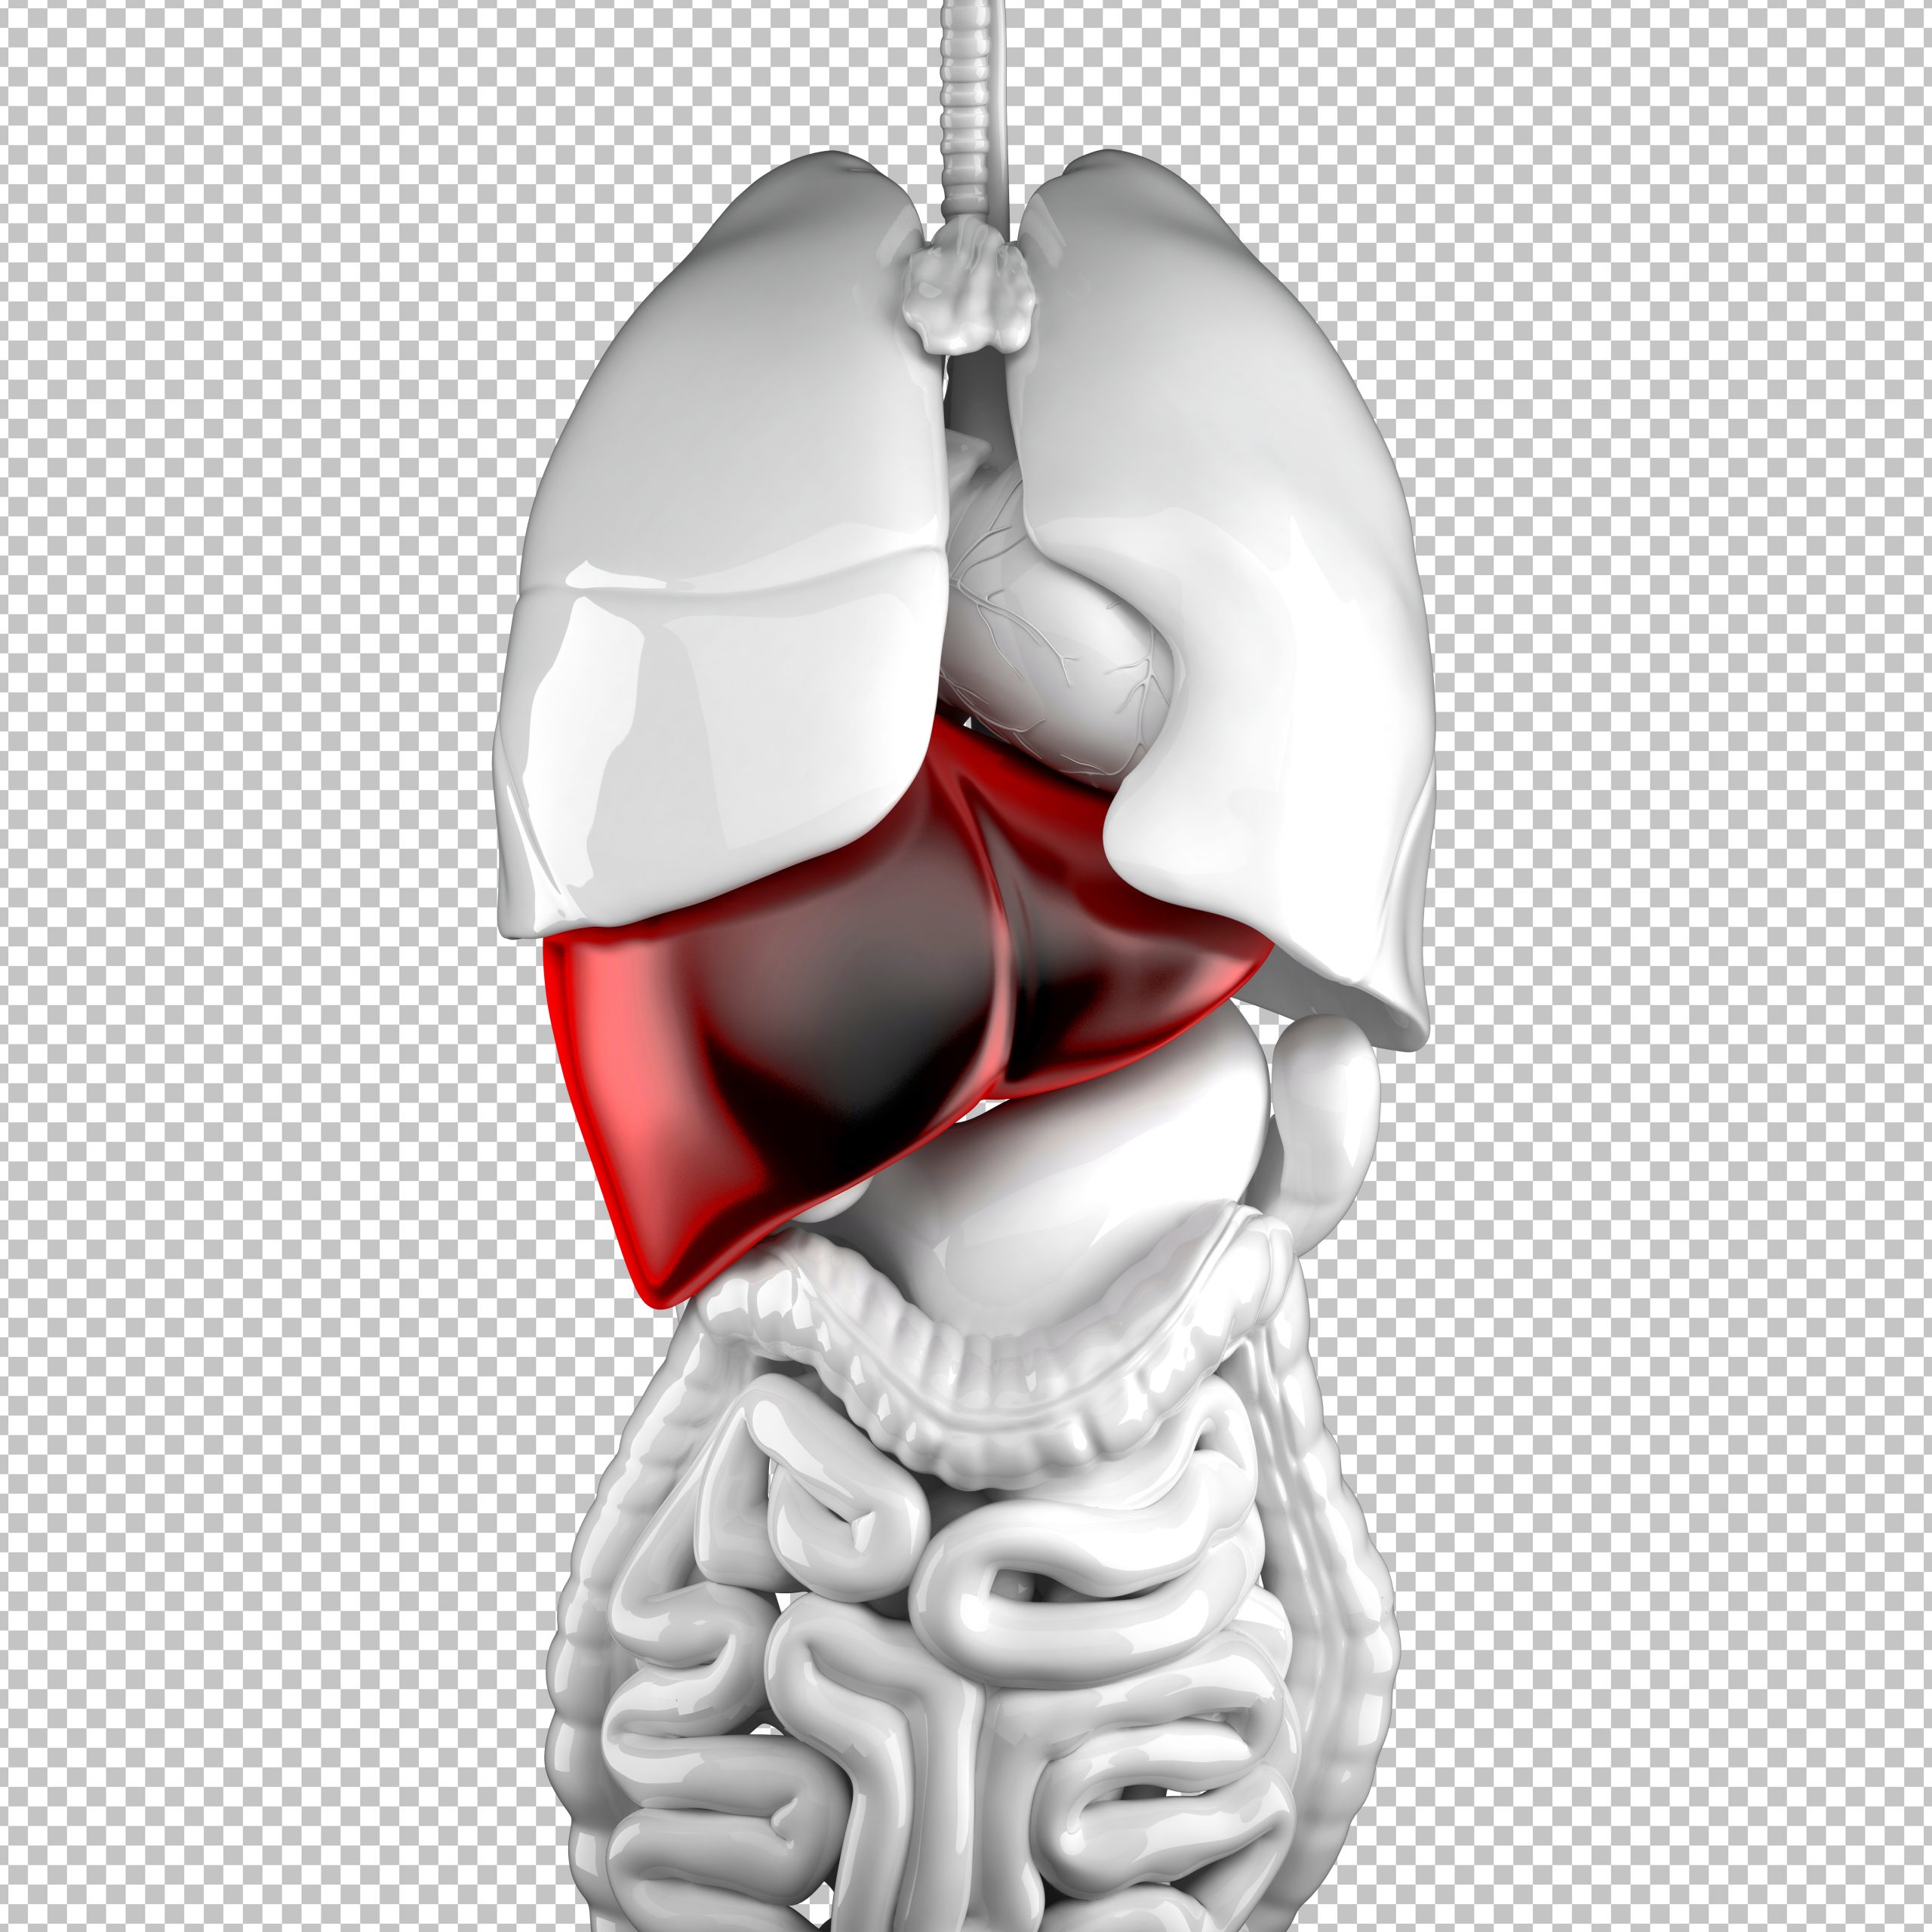 Human liver. Anatomical illustration